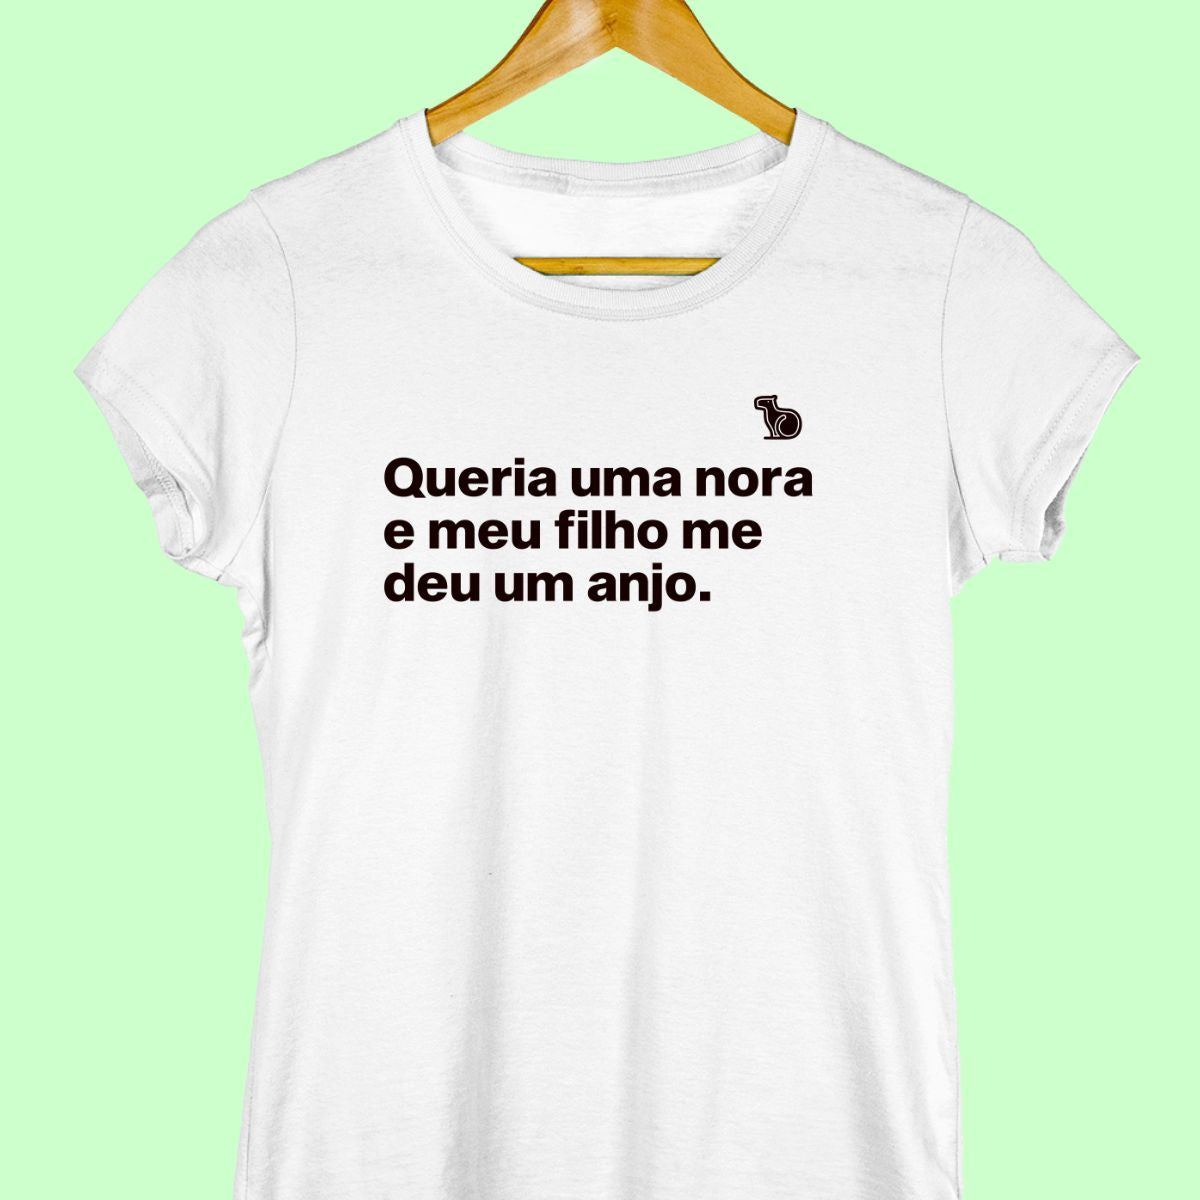 Camiseta com a frase "Queria uma nora e meu filho me deu um anjo." feminina branca.